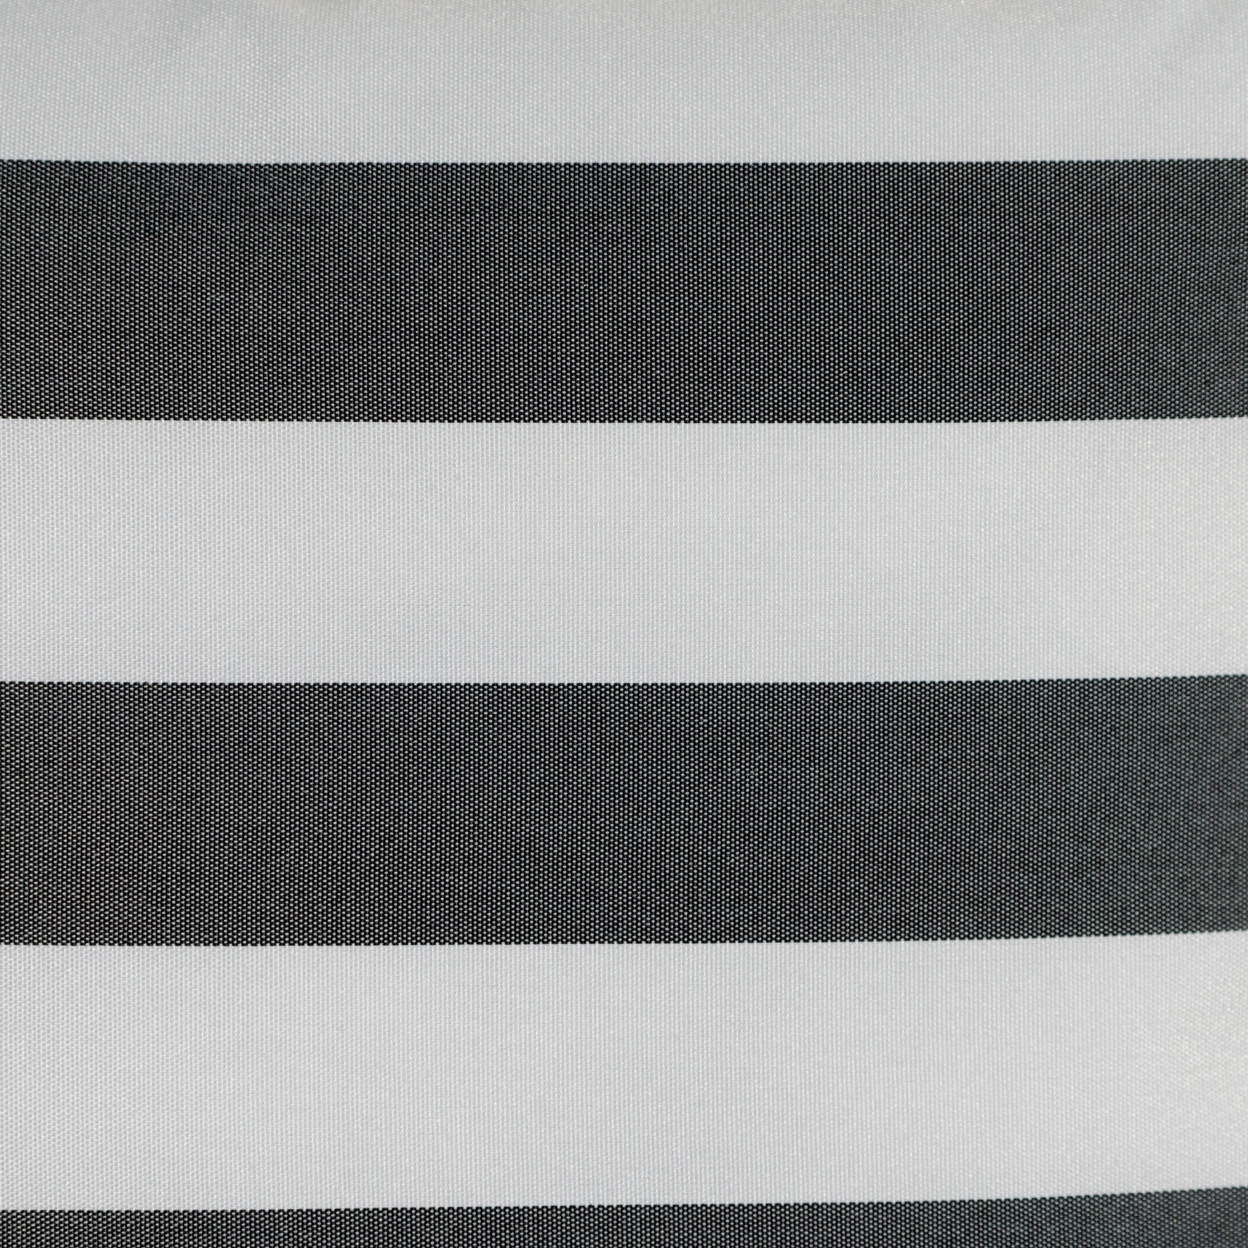 Coronado Outdoor Stripe Water Resistant Square Throw Pillow - Dark Teal/white, Single